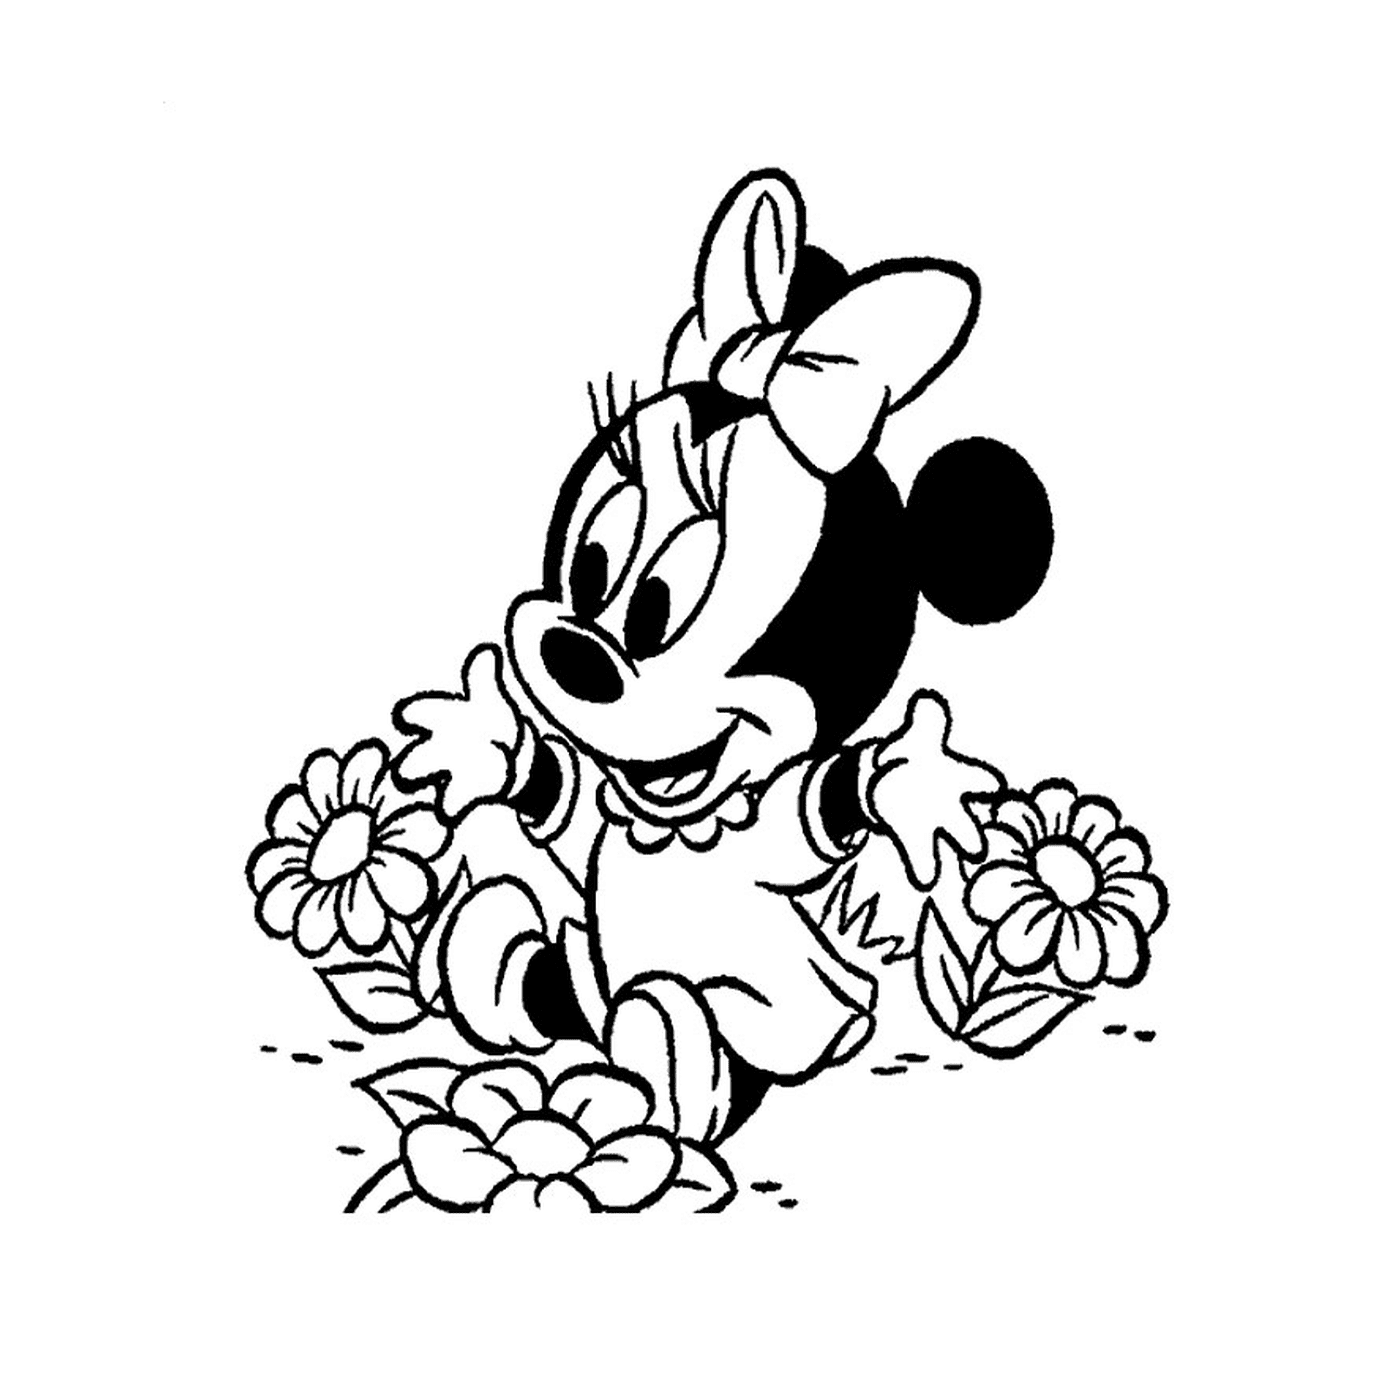   Minnie Mouse bébé assise sur des fleurs 